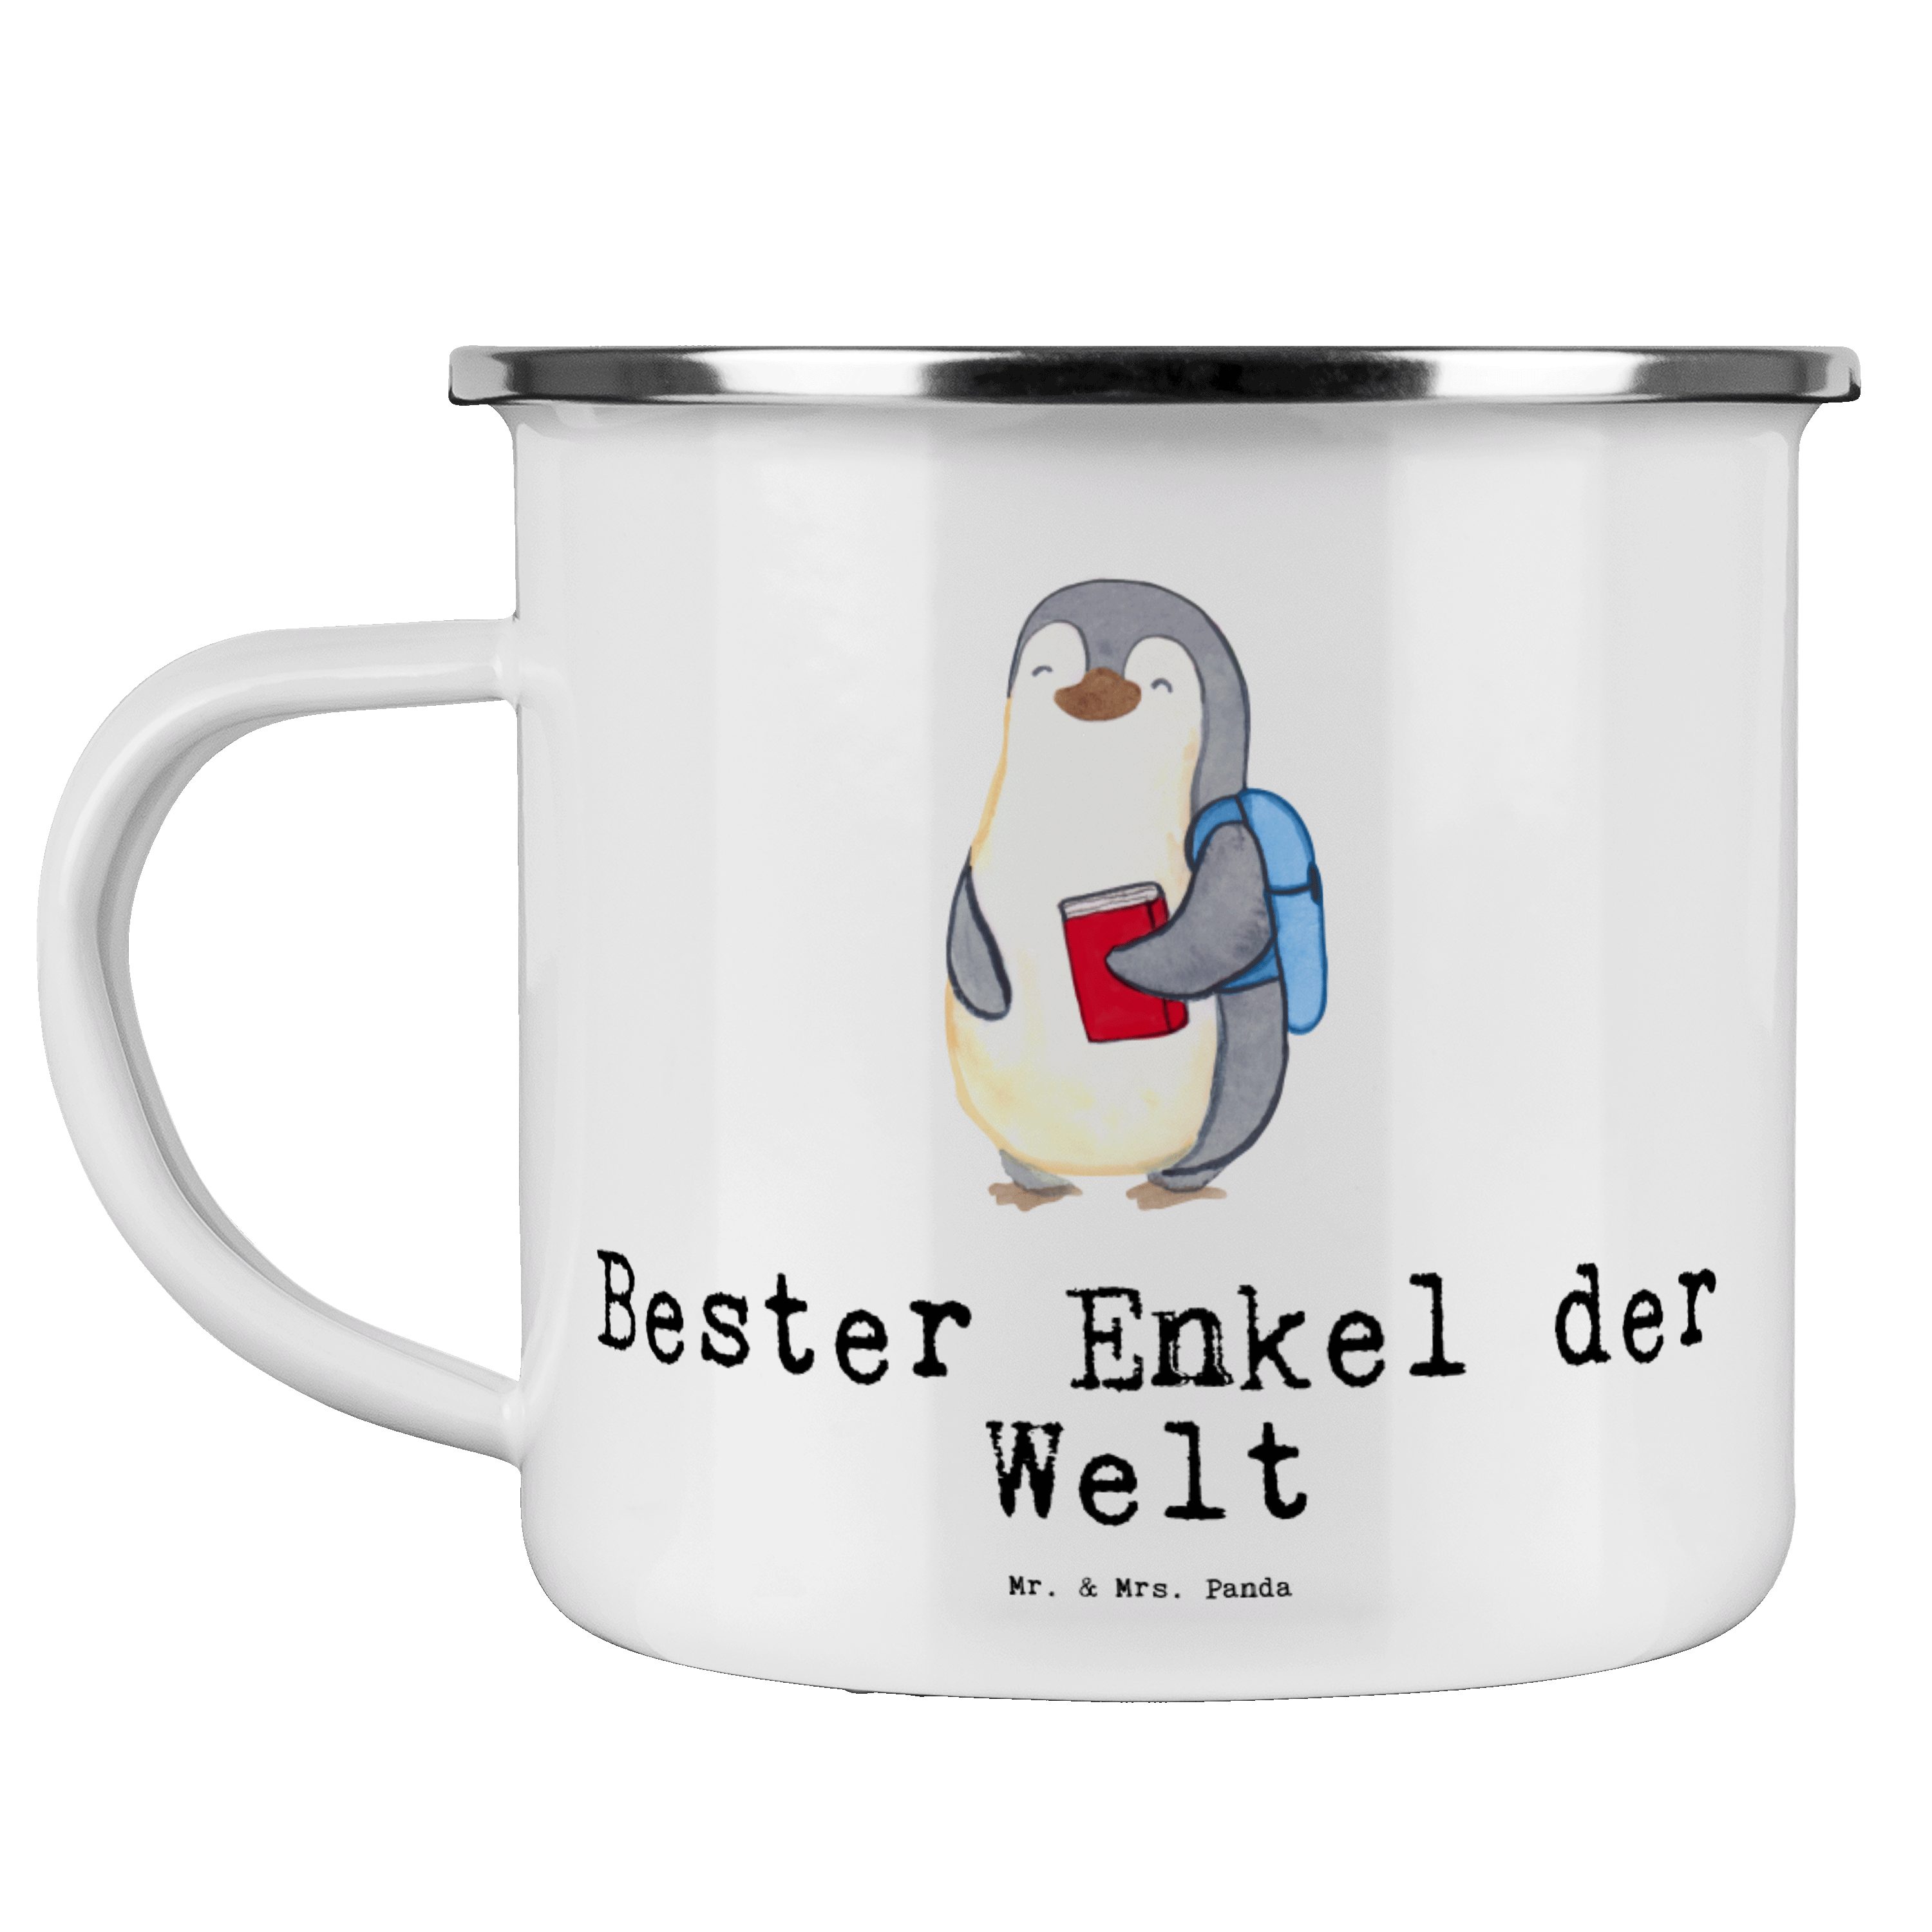 Mr. & Mrs. der Becher Tr, Enkel Geschenk, Pinguin - Emaille Welt Panda Weiß - Bester Emaille Großsohn